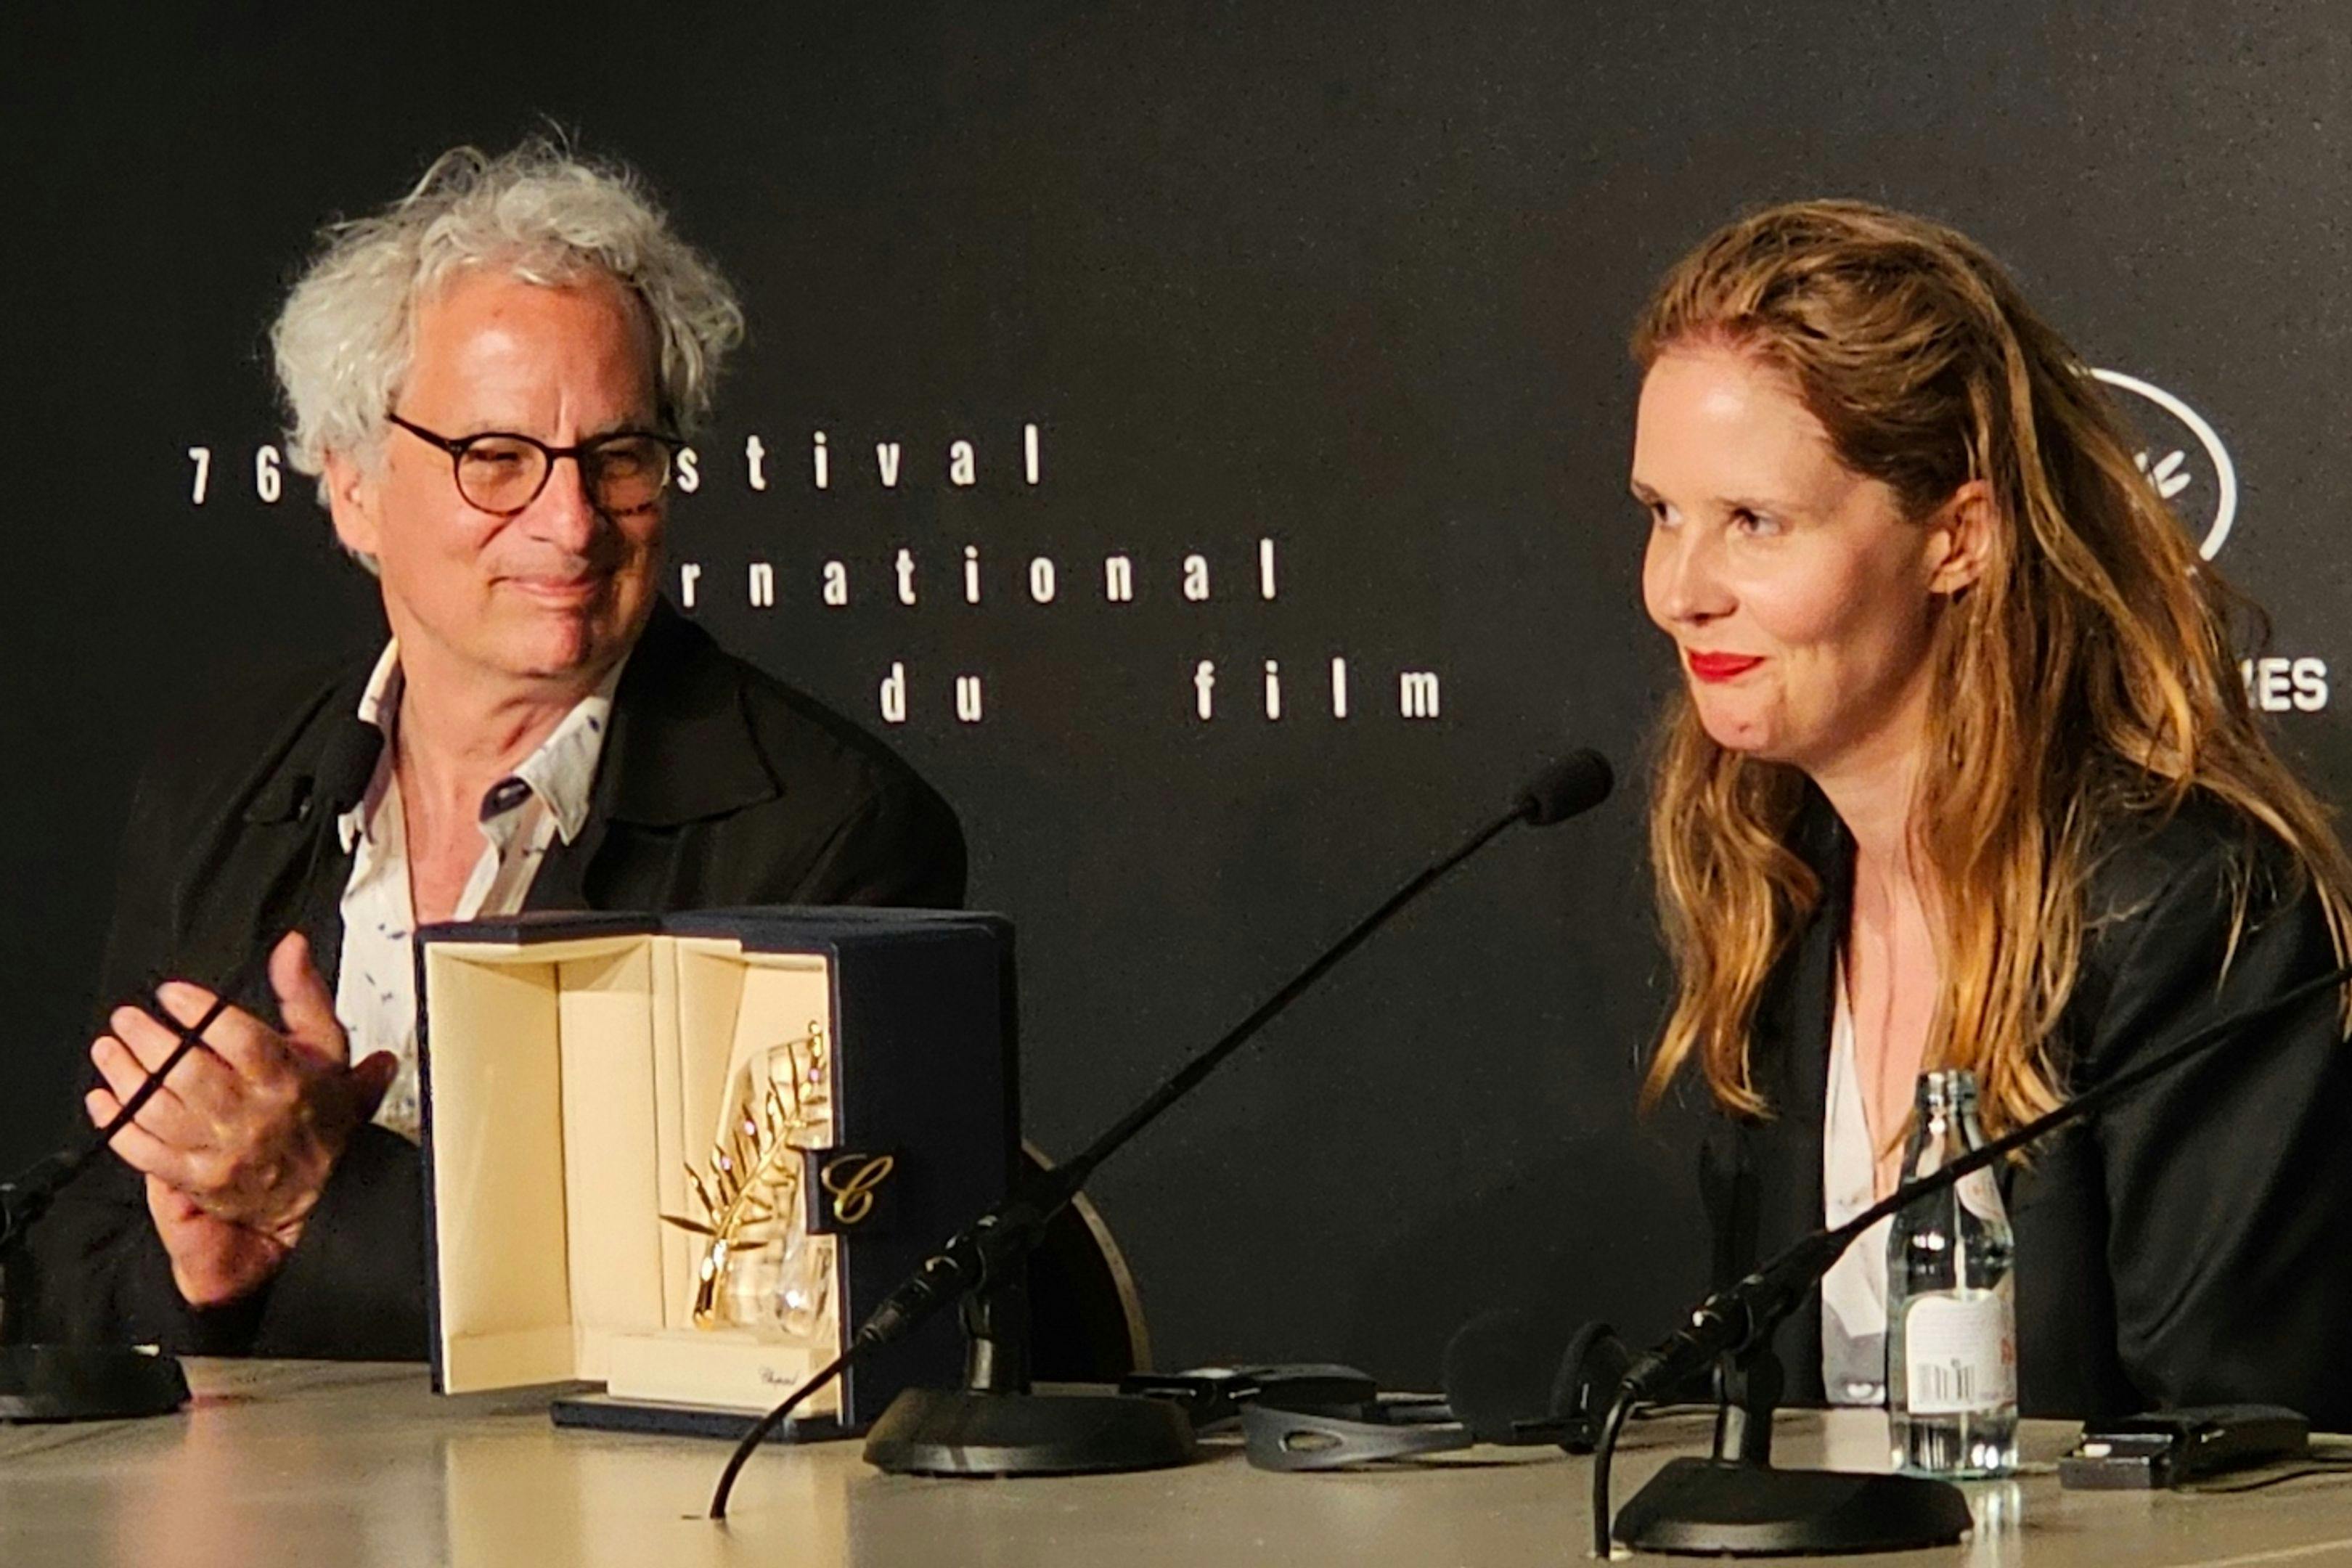 La directora Justine Triet, con su Palma de Oro ante la prensa del Festival de Cannes